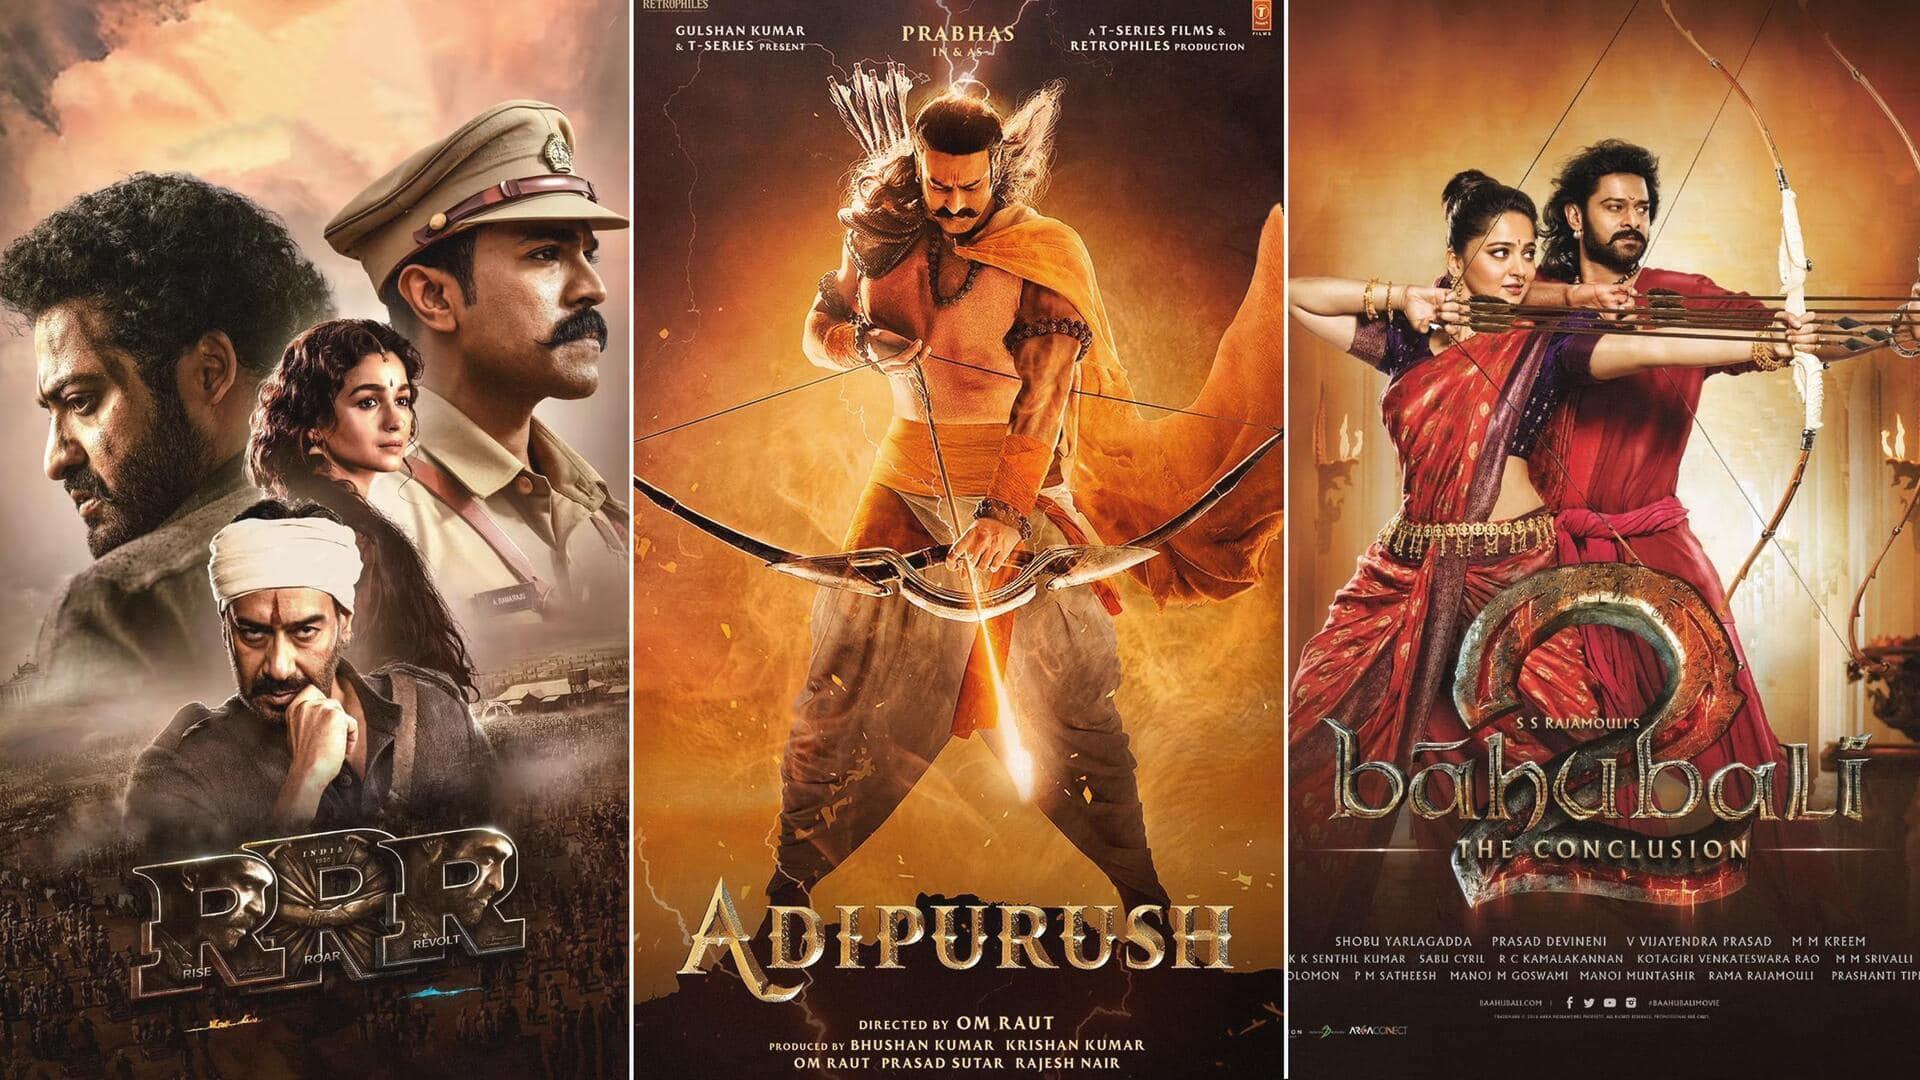 'आदिपुरुष' से पहले आ चुकीं हैं रामायण से प्रेरित ये फिल्में, जानिए कैसा रहा प्रदर्शन